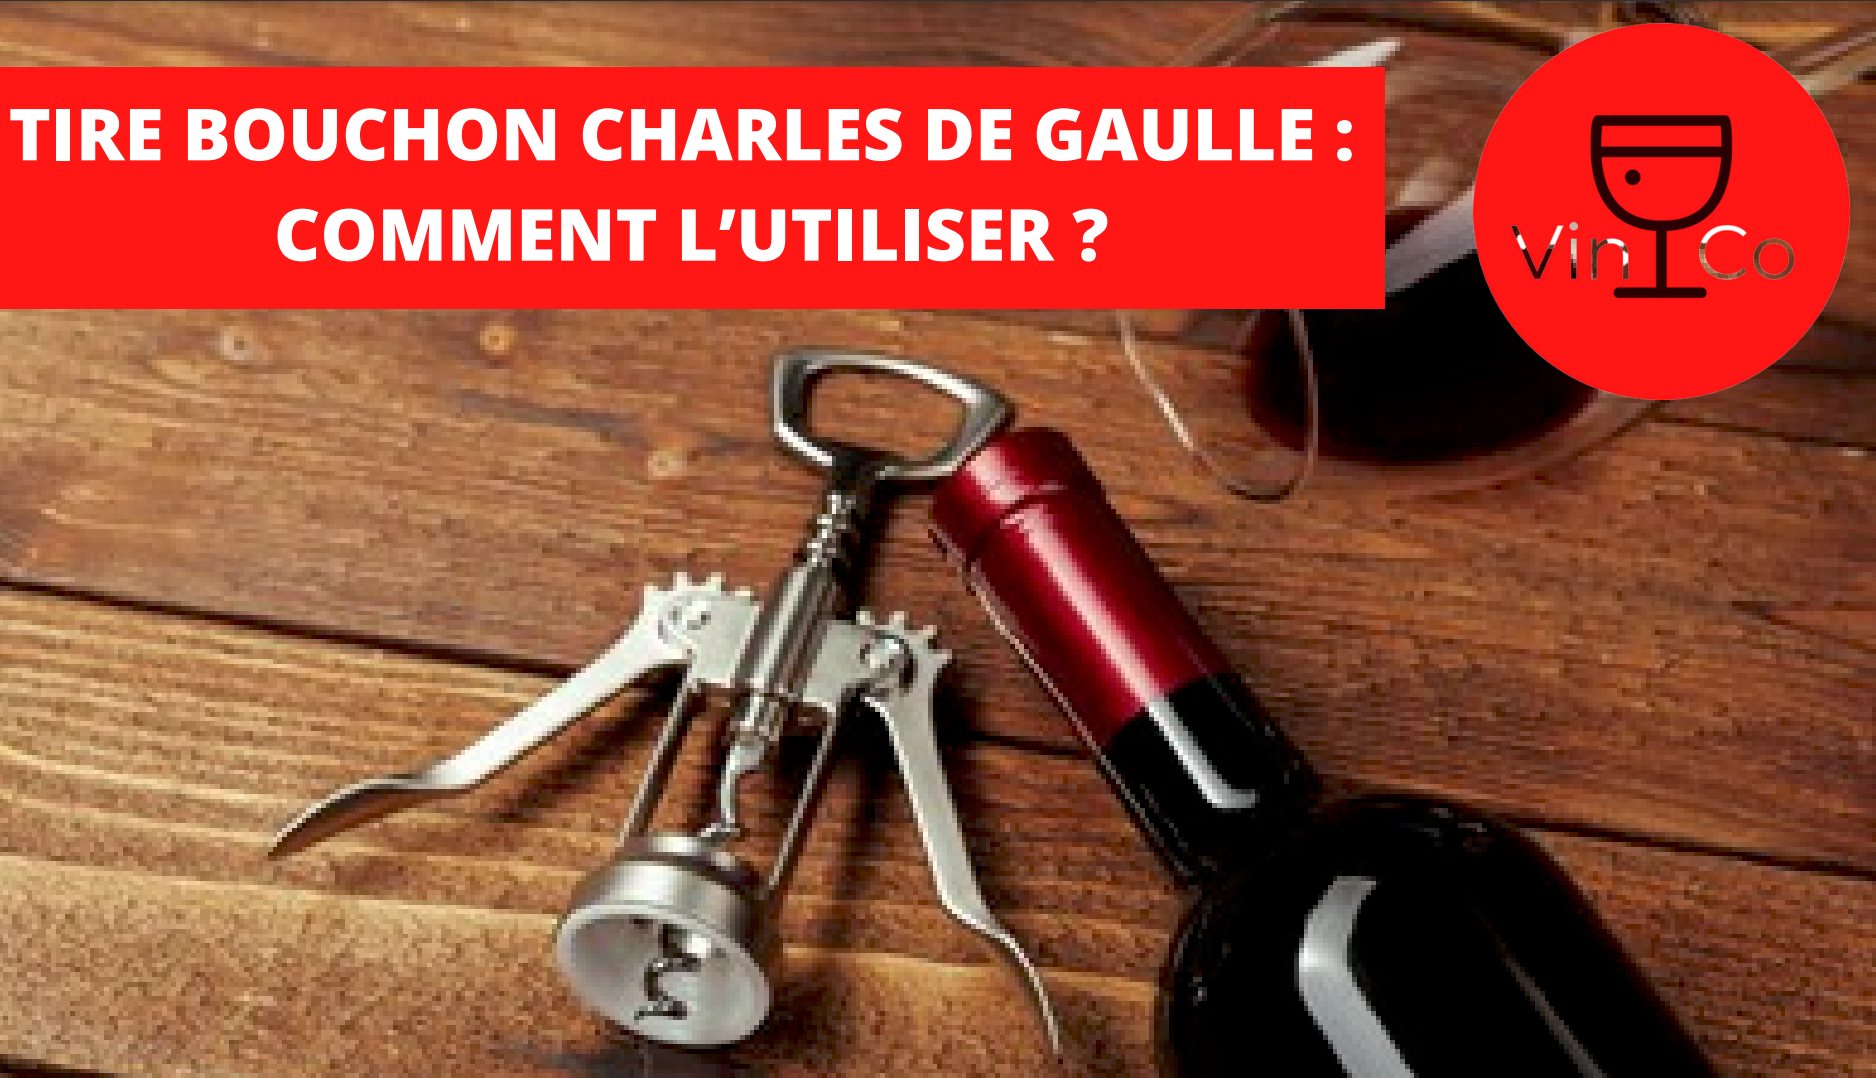 TIRE BOUCHON CHARLES DE GAULLE : COMMENT L’UTILISER ?